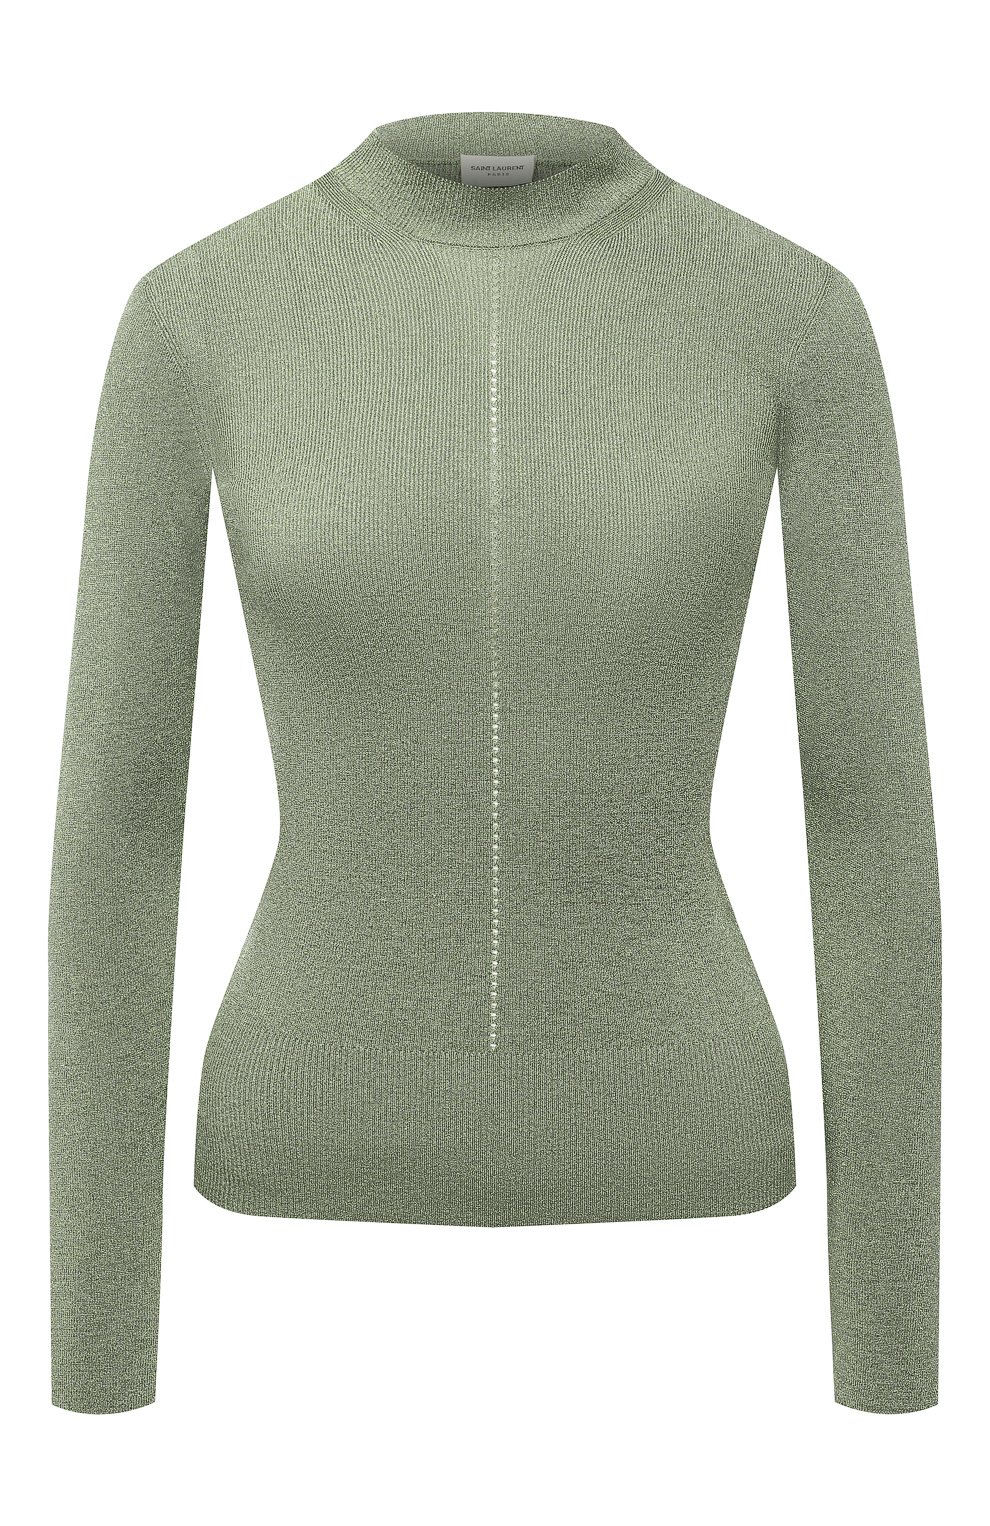 Женский пуловер из вискозы SAINT LAURENT светло-зеленого цвета, арт. 670073/Y75GK | Фото 1 (Рукава: Длинные; Стили: Гламурный; Длина (для топов): Стандартные; Материал внешний: Вискоза; Женское Кросс-КТ: Пуловер-одежда)